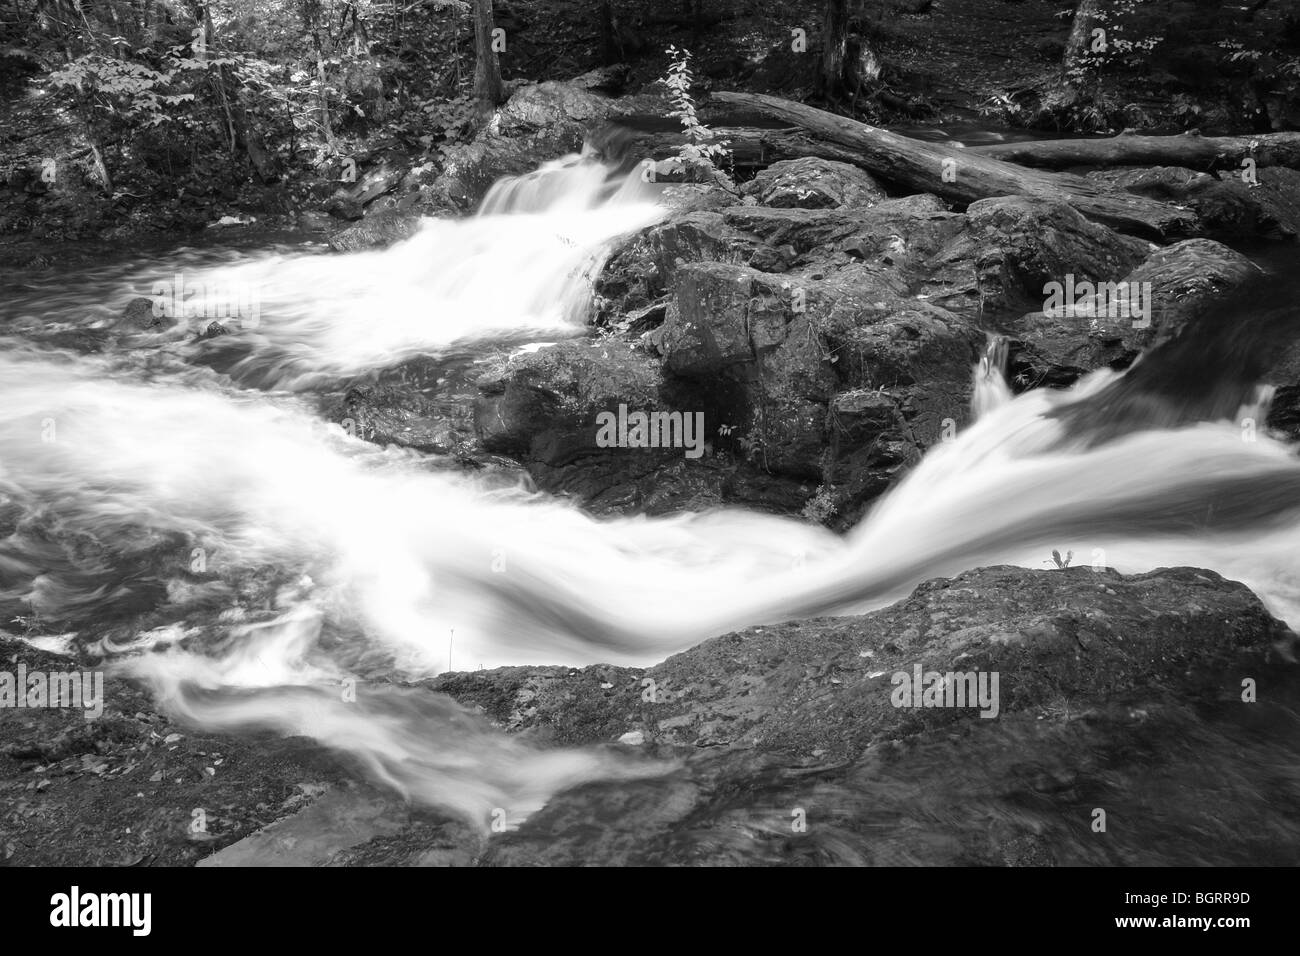 AJD62672, MI, Michigan, Upper Peninsula, Porcupine Mountains Wildnis State Park, übersehen Falls, Flüsschen Karpfen Stockfoto